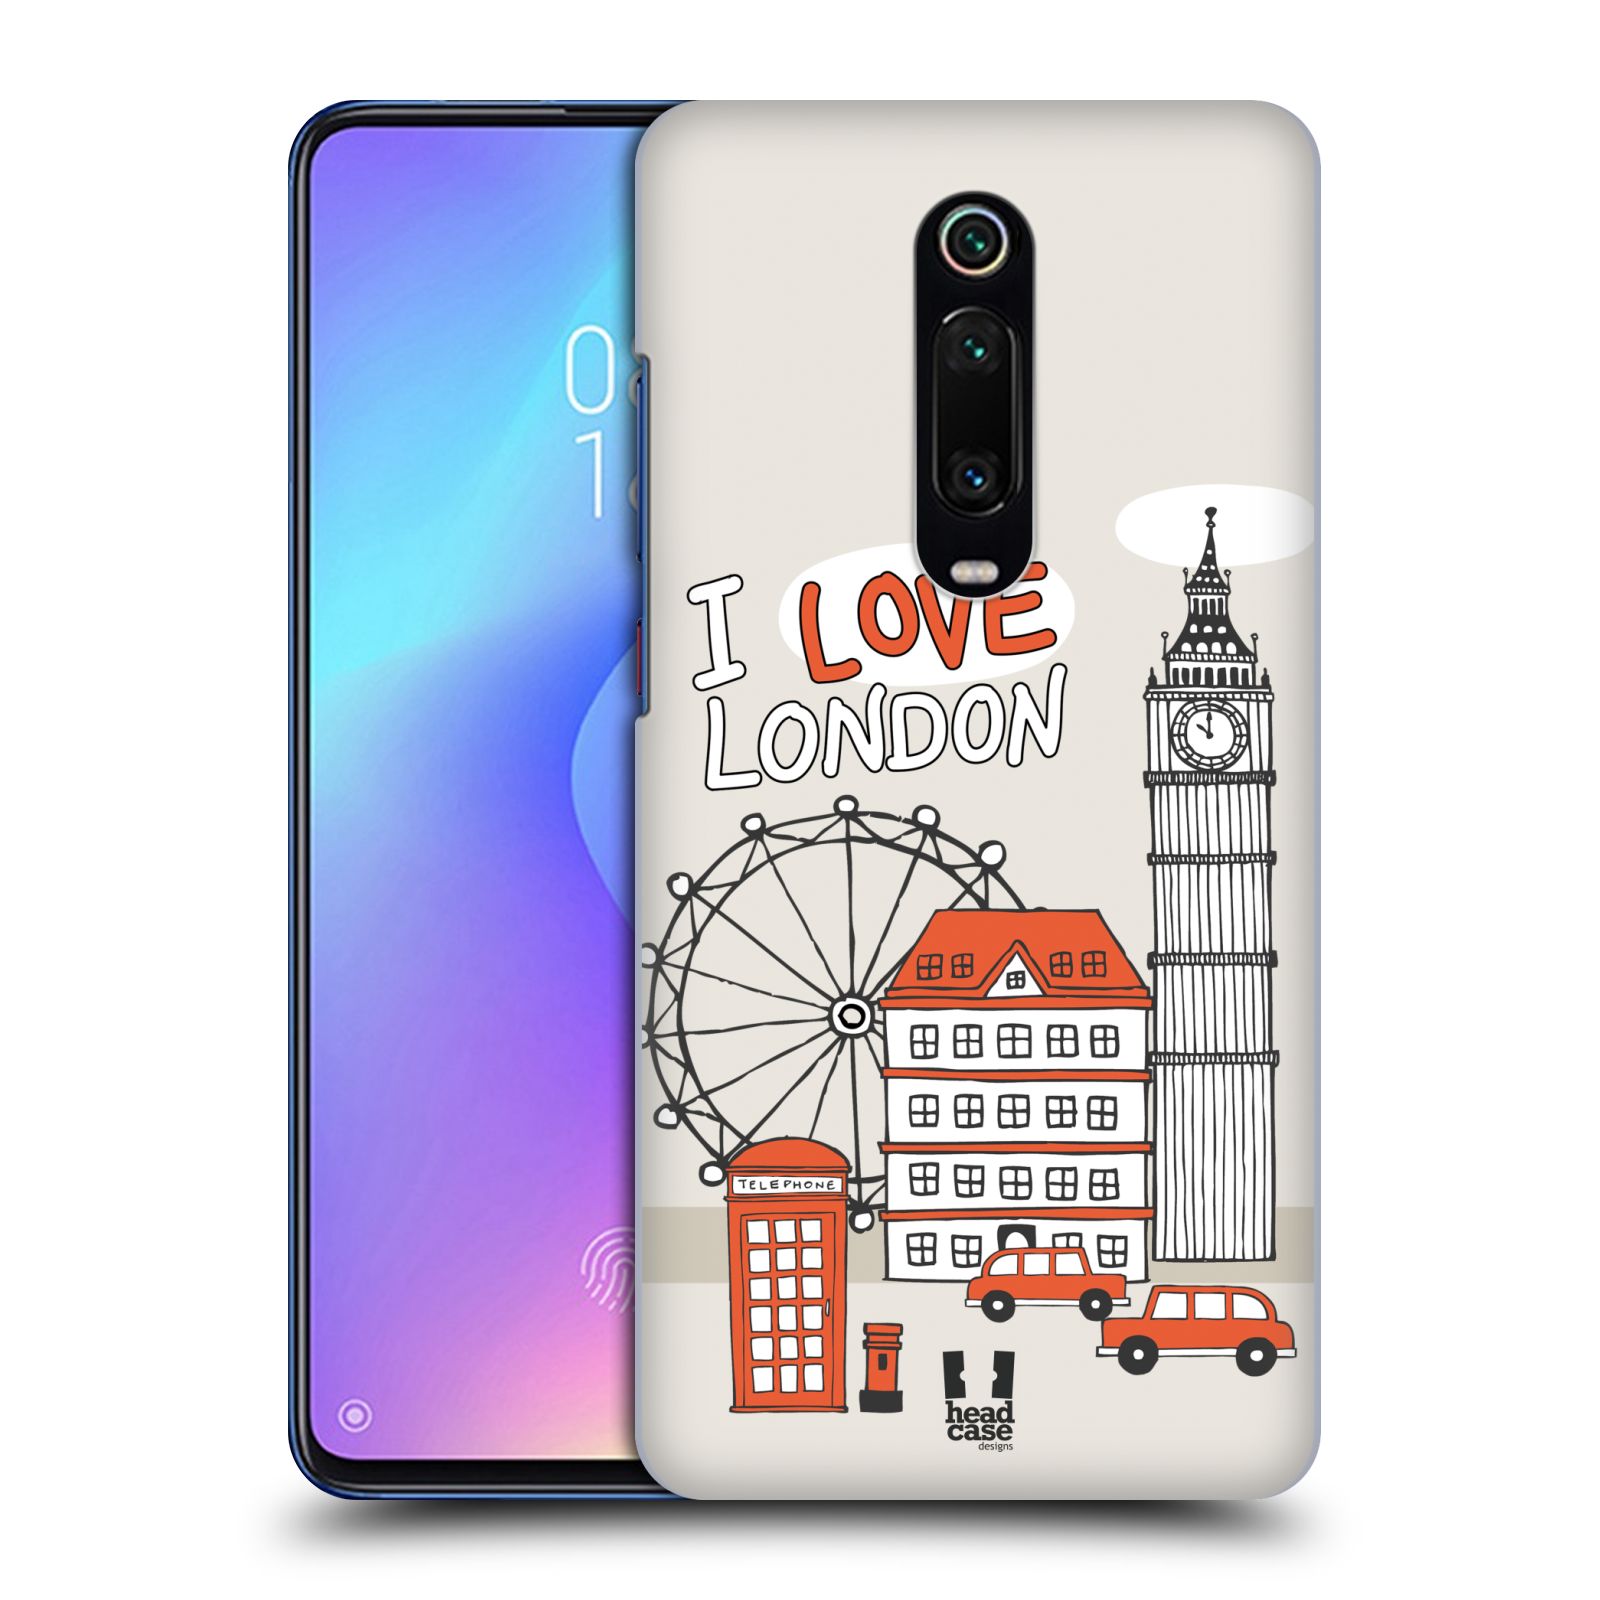 Pouzdro na mobil Xiaomi Mi 9T PRO - HEAD CASE - vzor Kreslená městečka ČERVENÁ, Anglie, Londýn, I LOVE LONDON